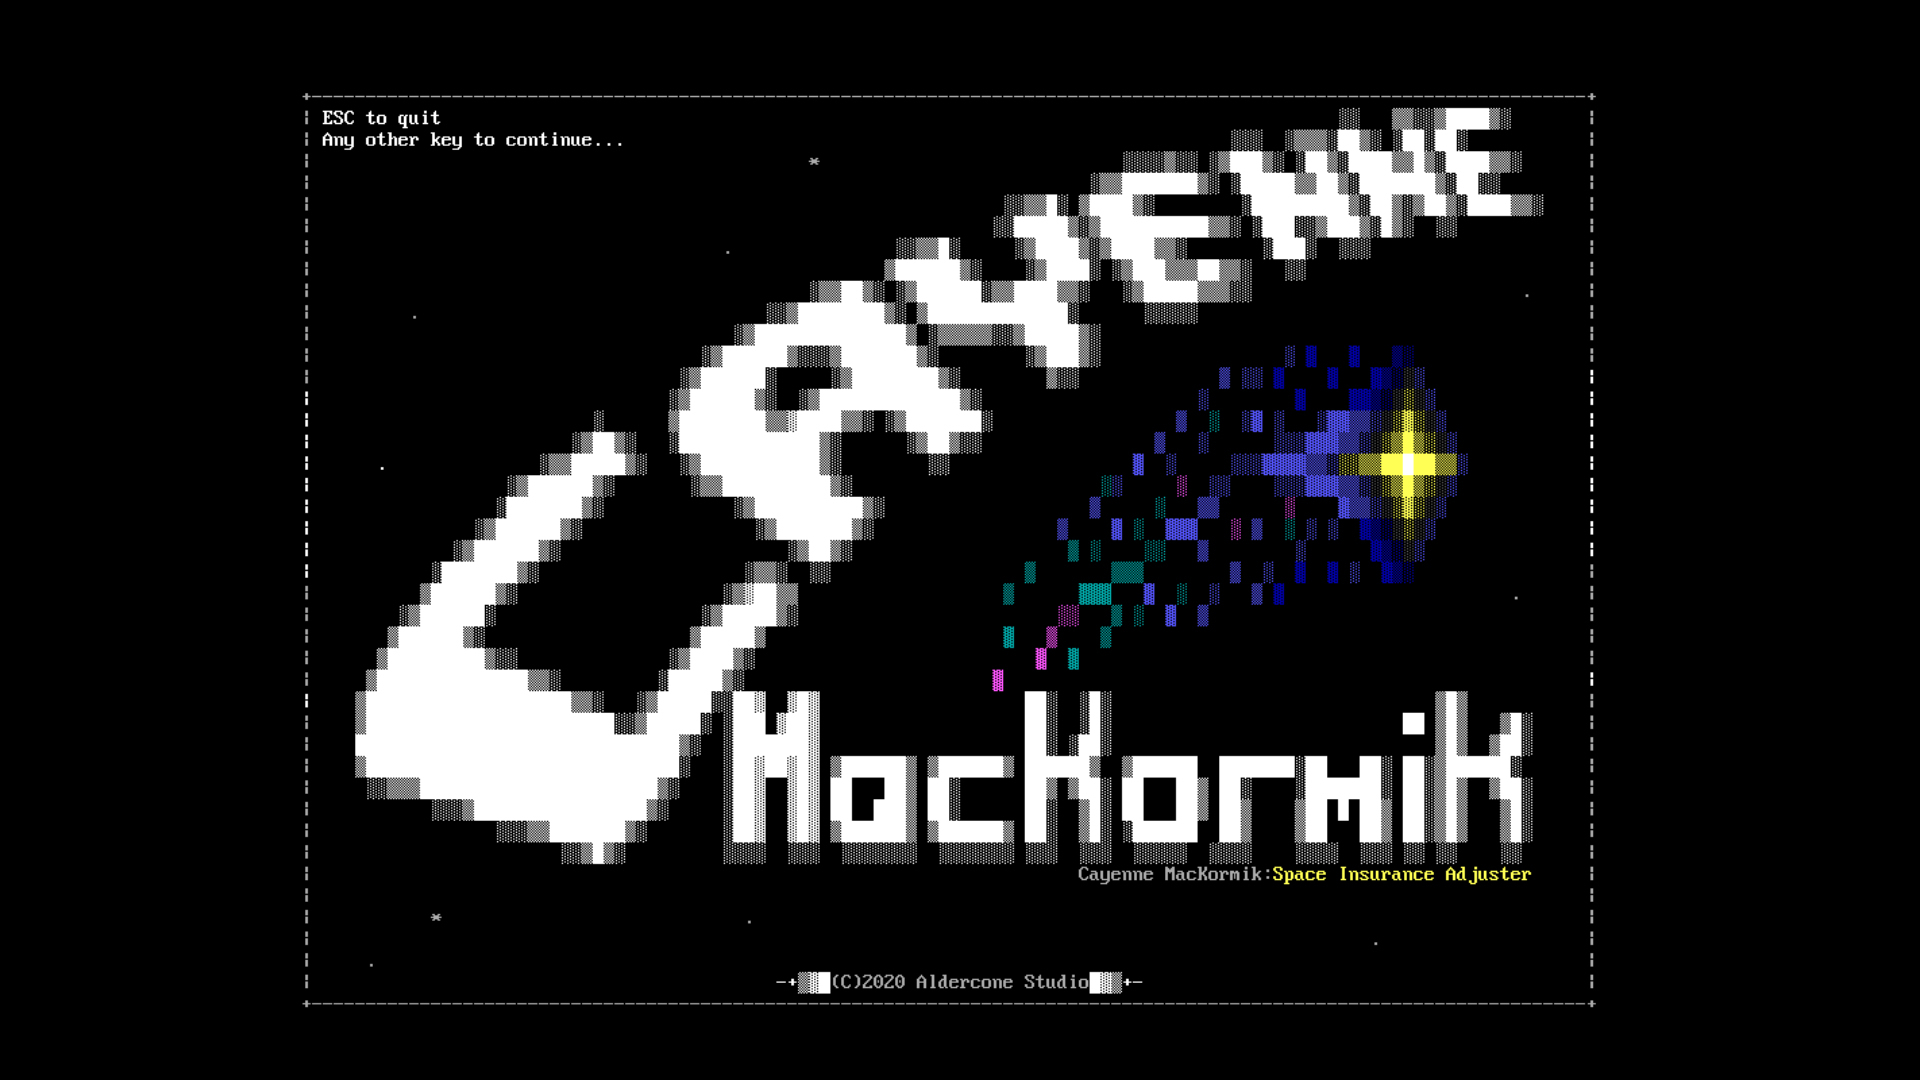 A screenshot of Cayenne MacKormik showing an ASCII style title screen.